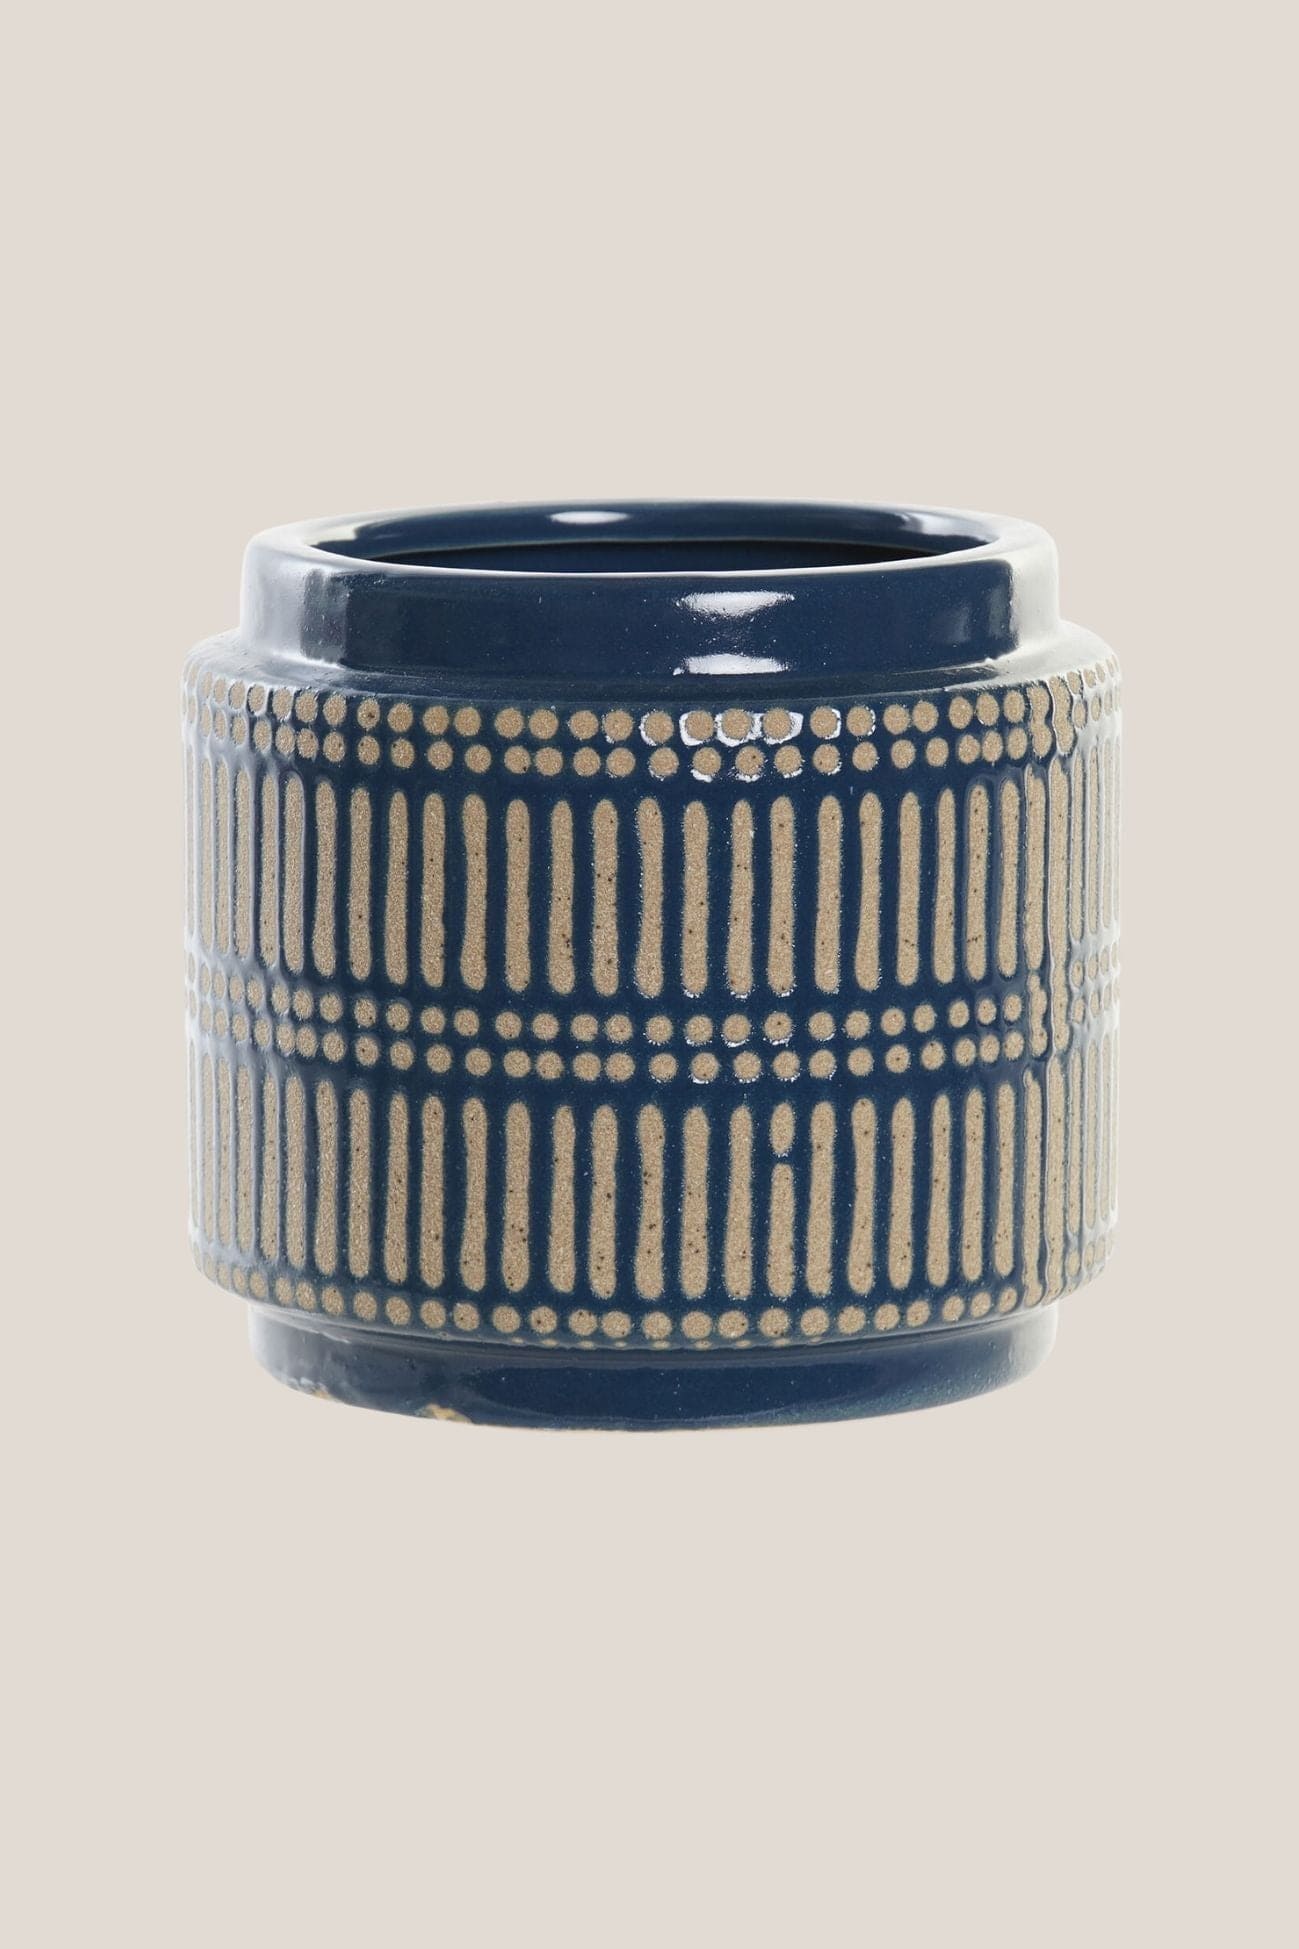 Item International Cedric Cedric - Vaso in ceramica blu e beige in stile orientale | Item International